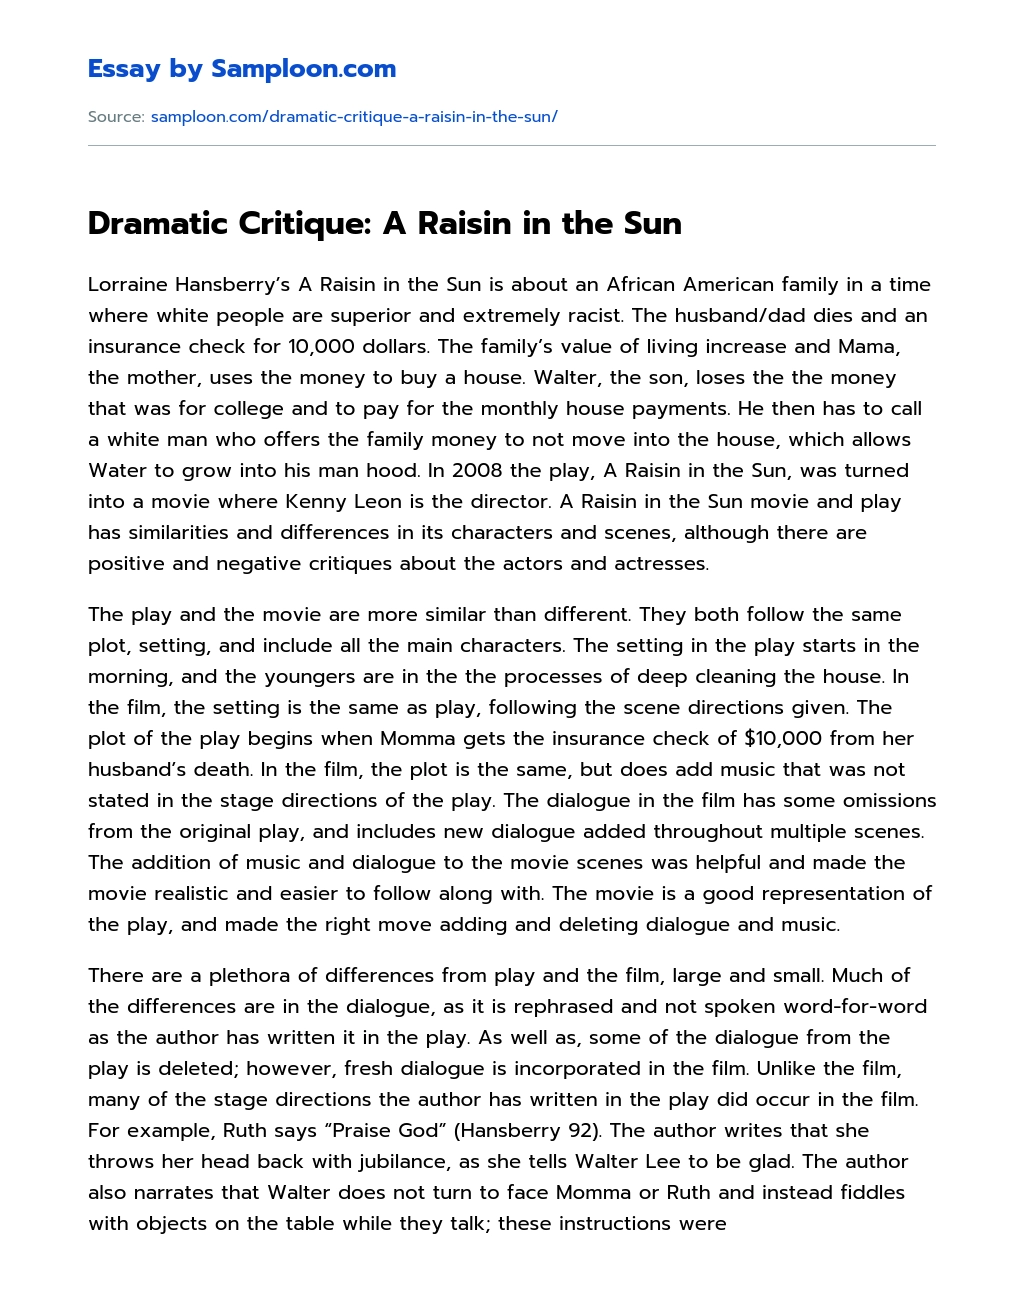 Dramatic Critique: A Raisin in the Sun Review essay